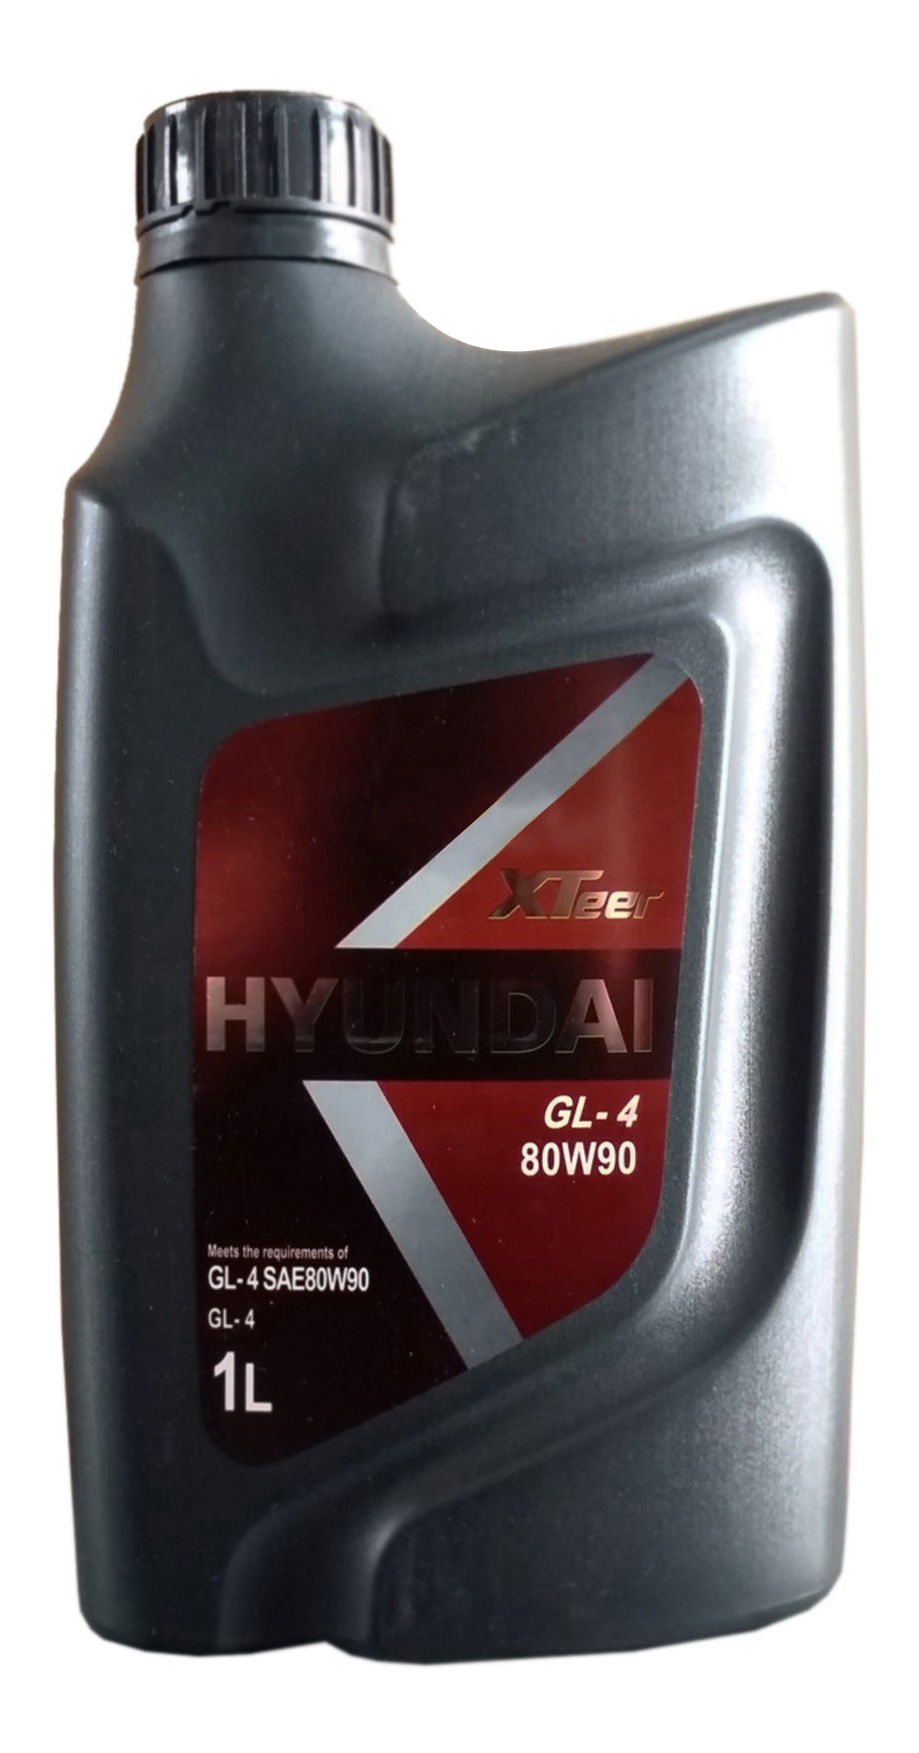 Трансмиссионное масло hyundai xteer. Hyundai XTEER Gear Oil-4 75w90. Hyundai XTEER Gear Oil 80w90. Hyundai XTEER gl-4 80w90. Hyundai XTEER 1011011.